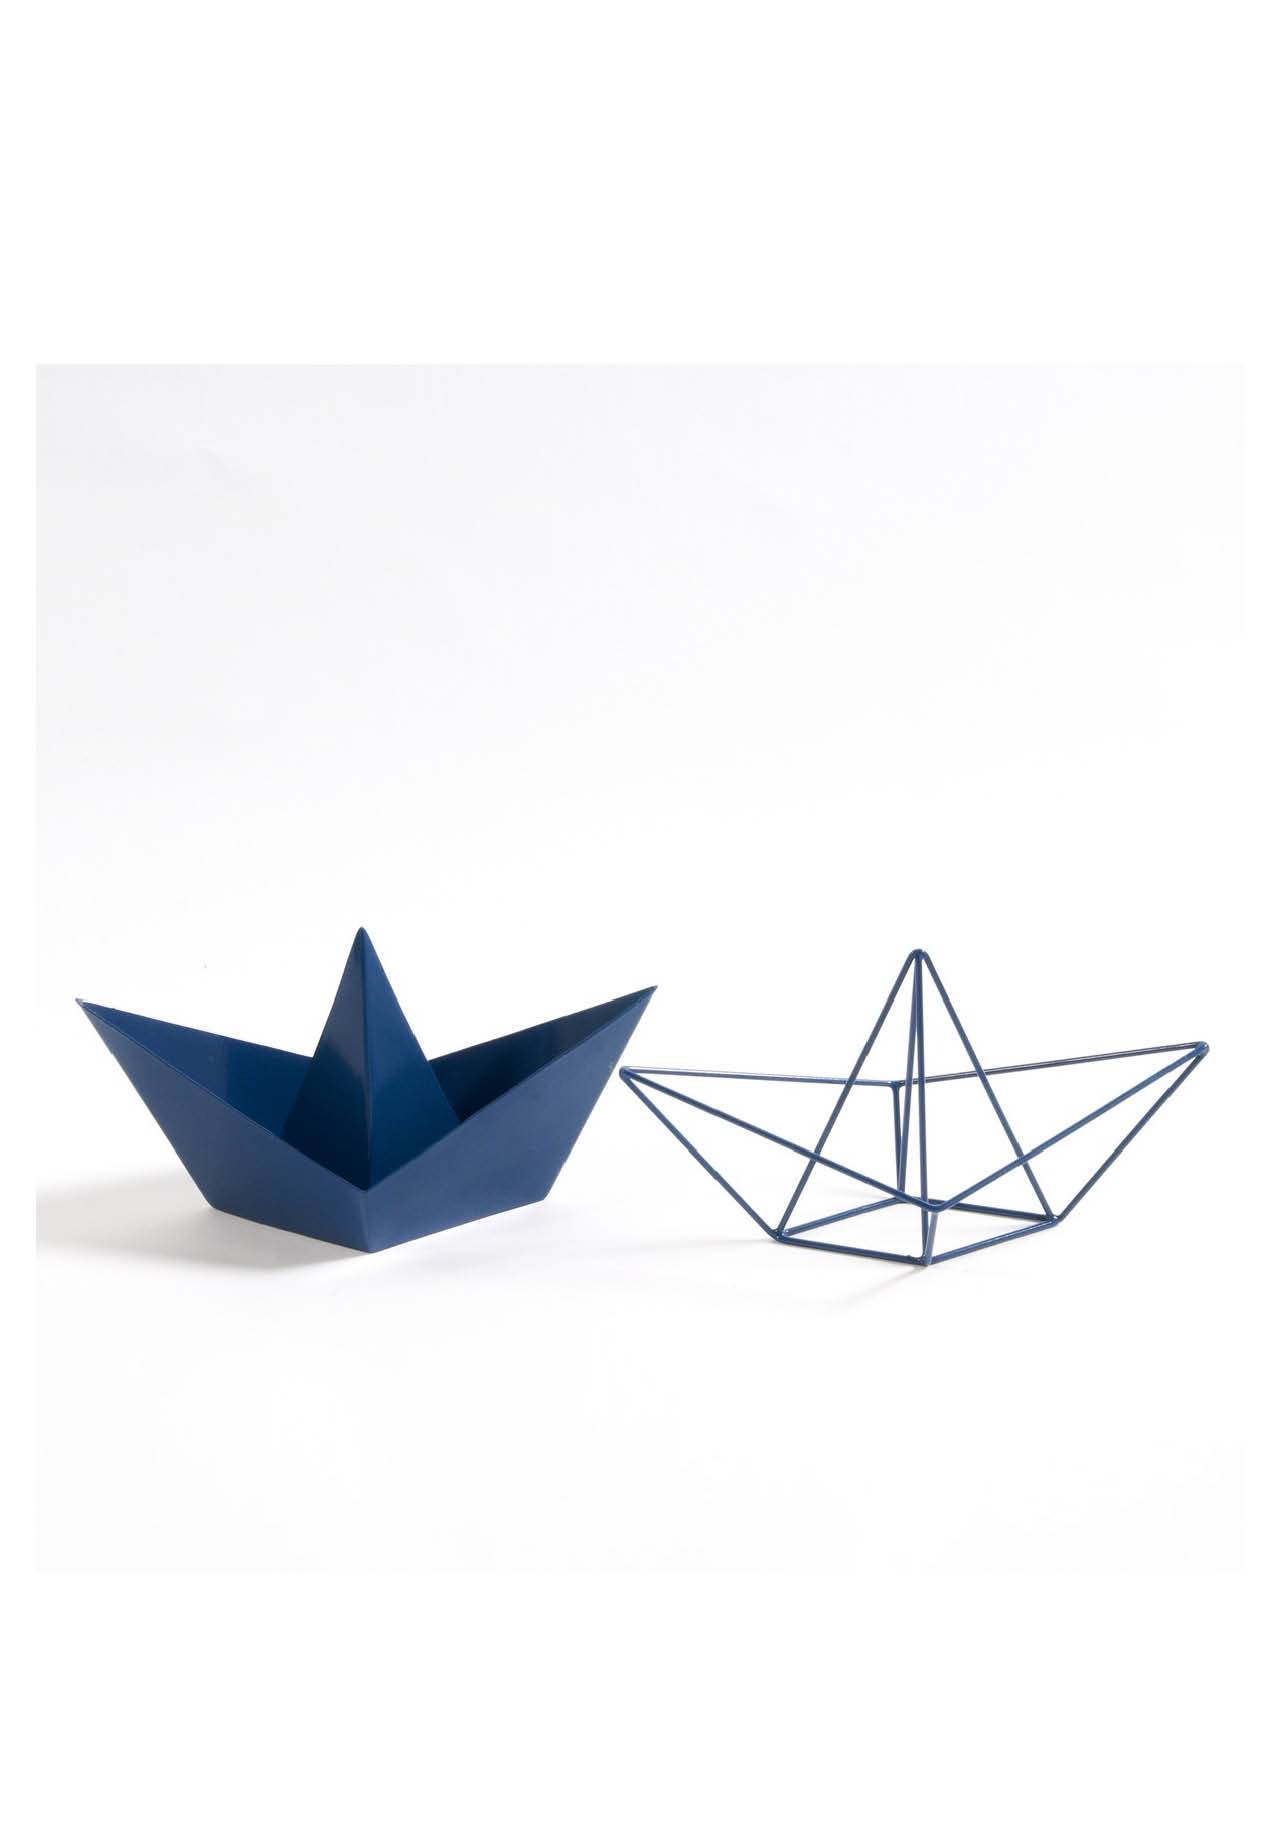 decoracion 2020 low cost16. Lote de 2 barcos de metal Gayoma, estilo origami